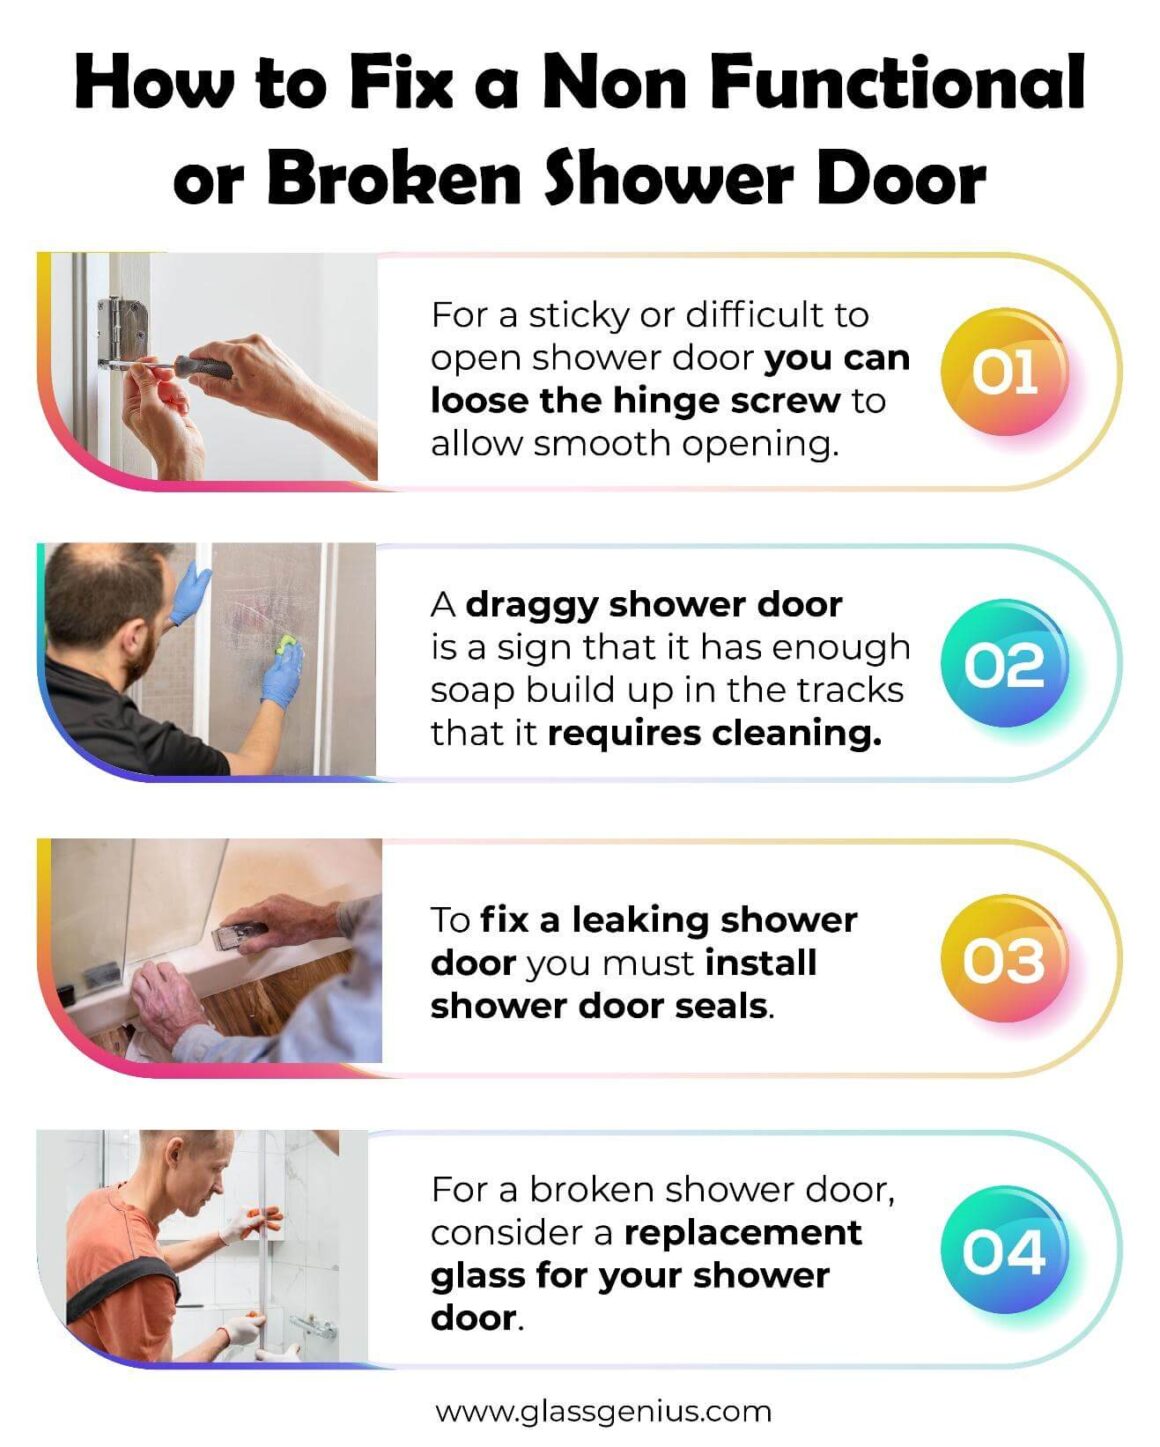 https://www.glassgenius.com/blog/wp-content/uploads/2021/11/how-to-fix-a-non-functional-or-broken-shower-door-1160x1447.jpg